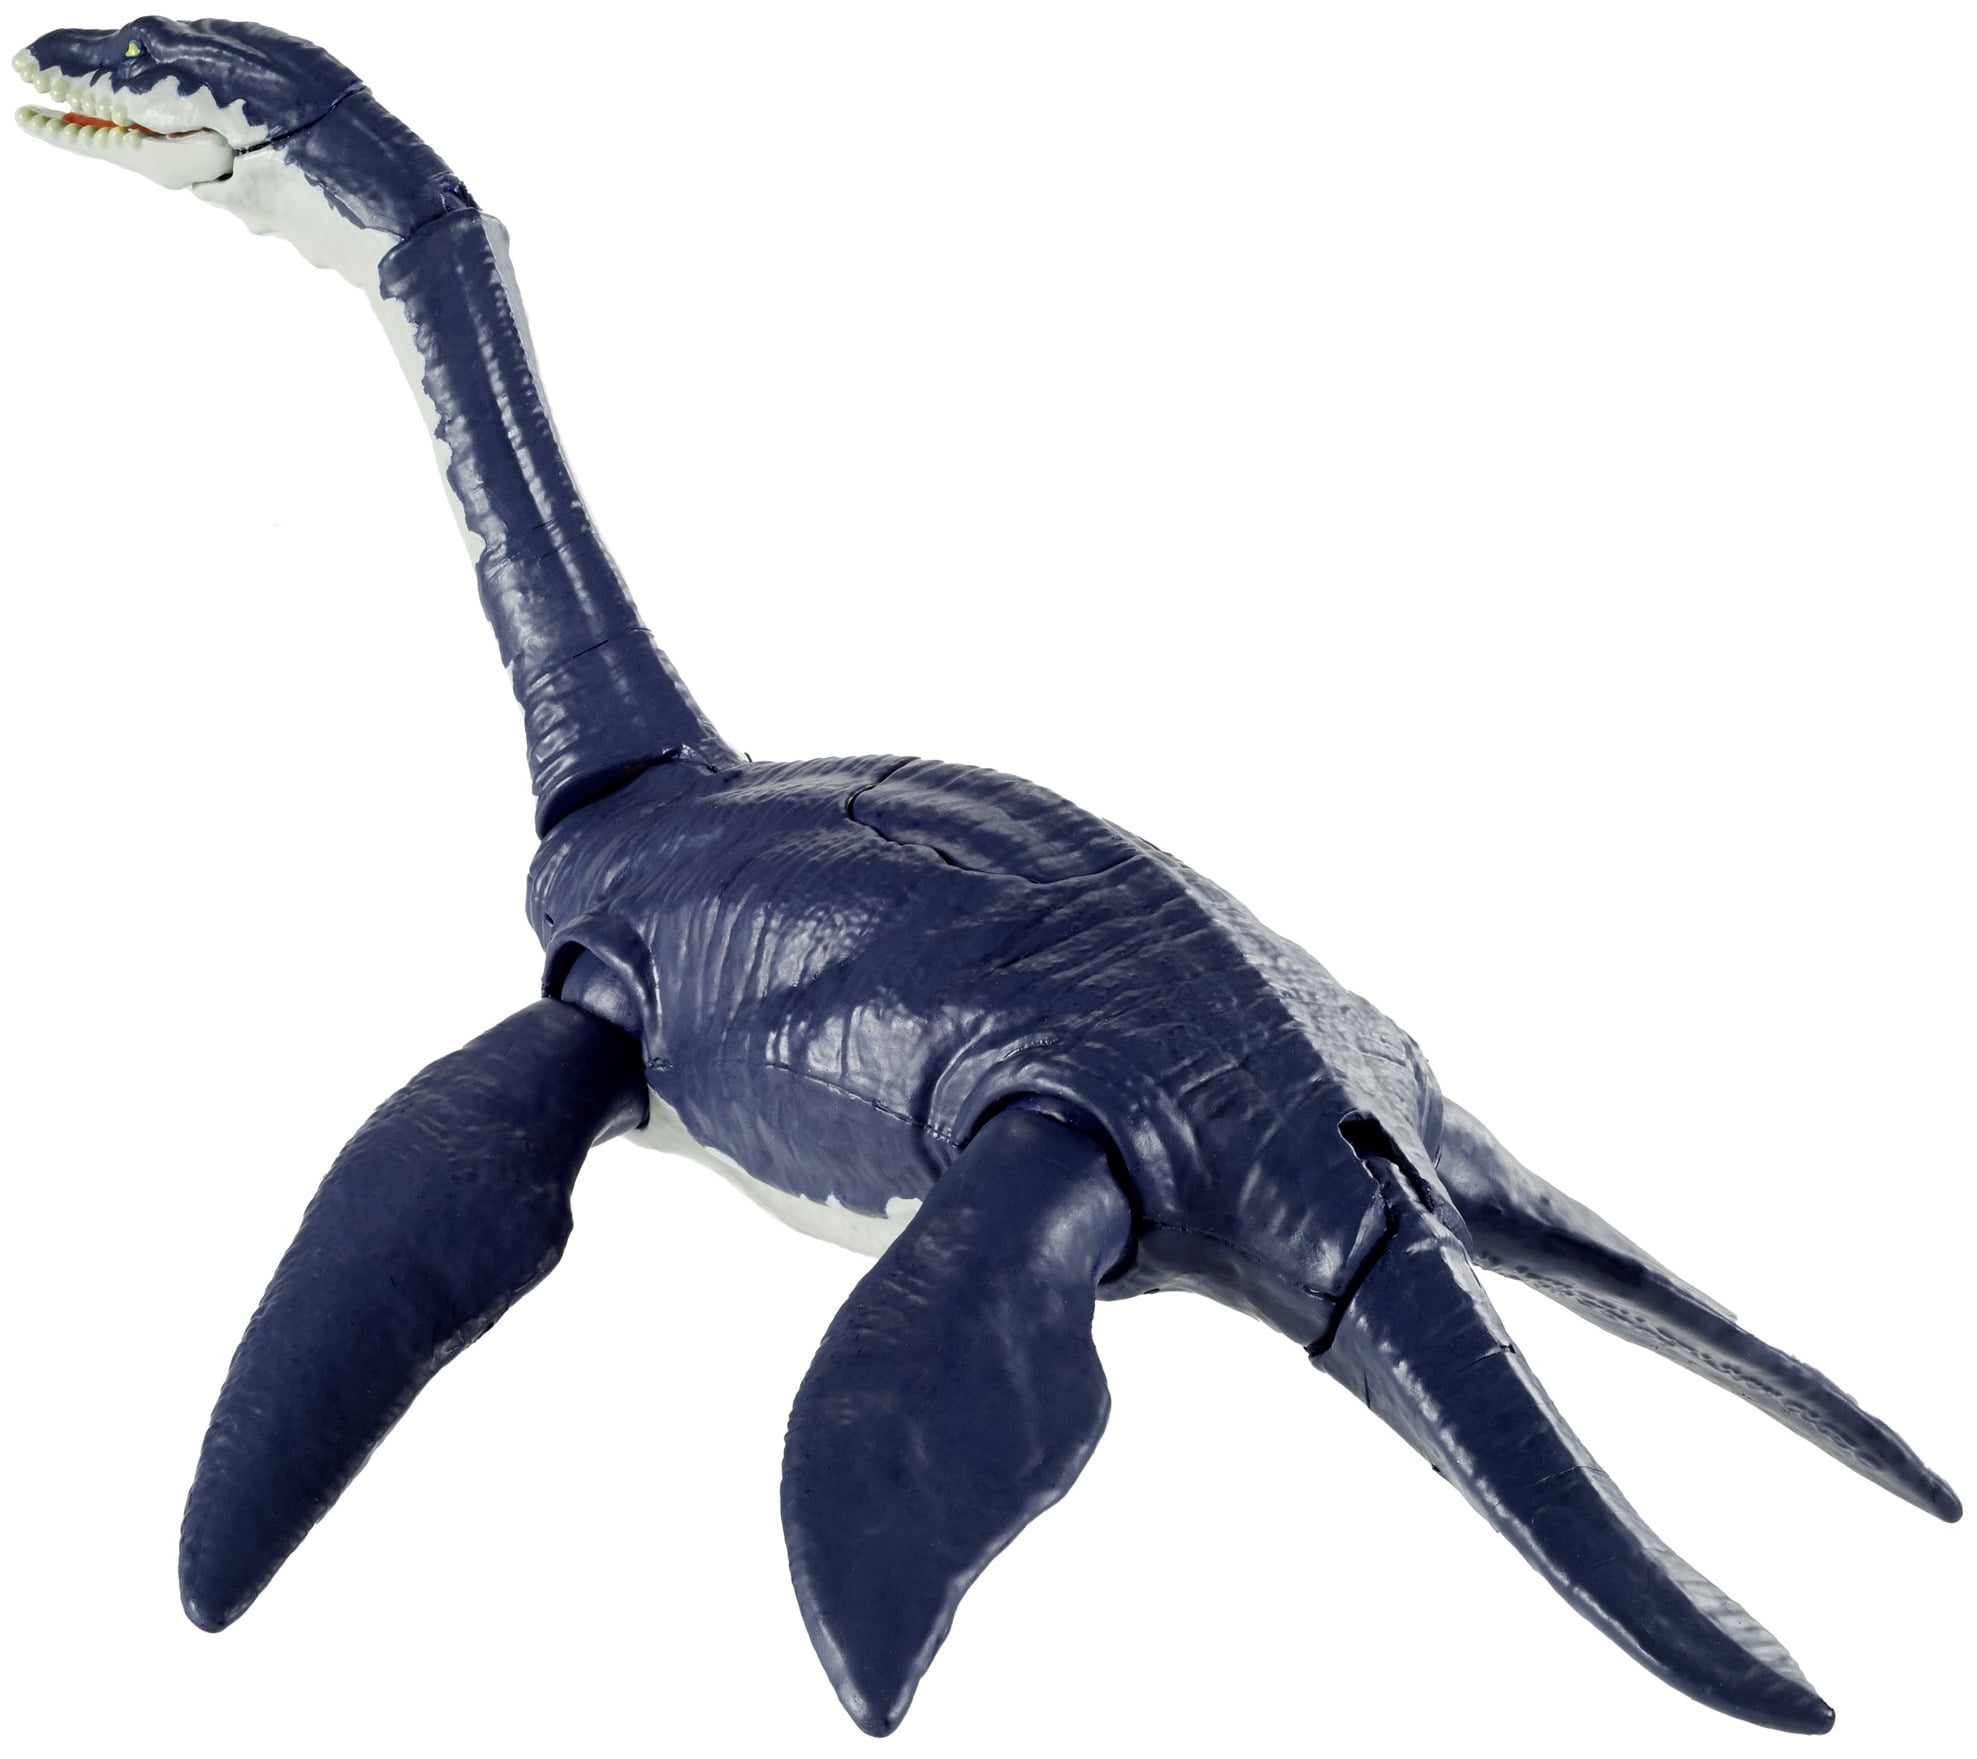 Lego Jurassic Park Dilophosaurus Ambush Dinosaur Toy 76958 : Target